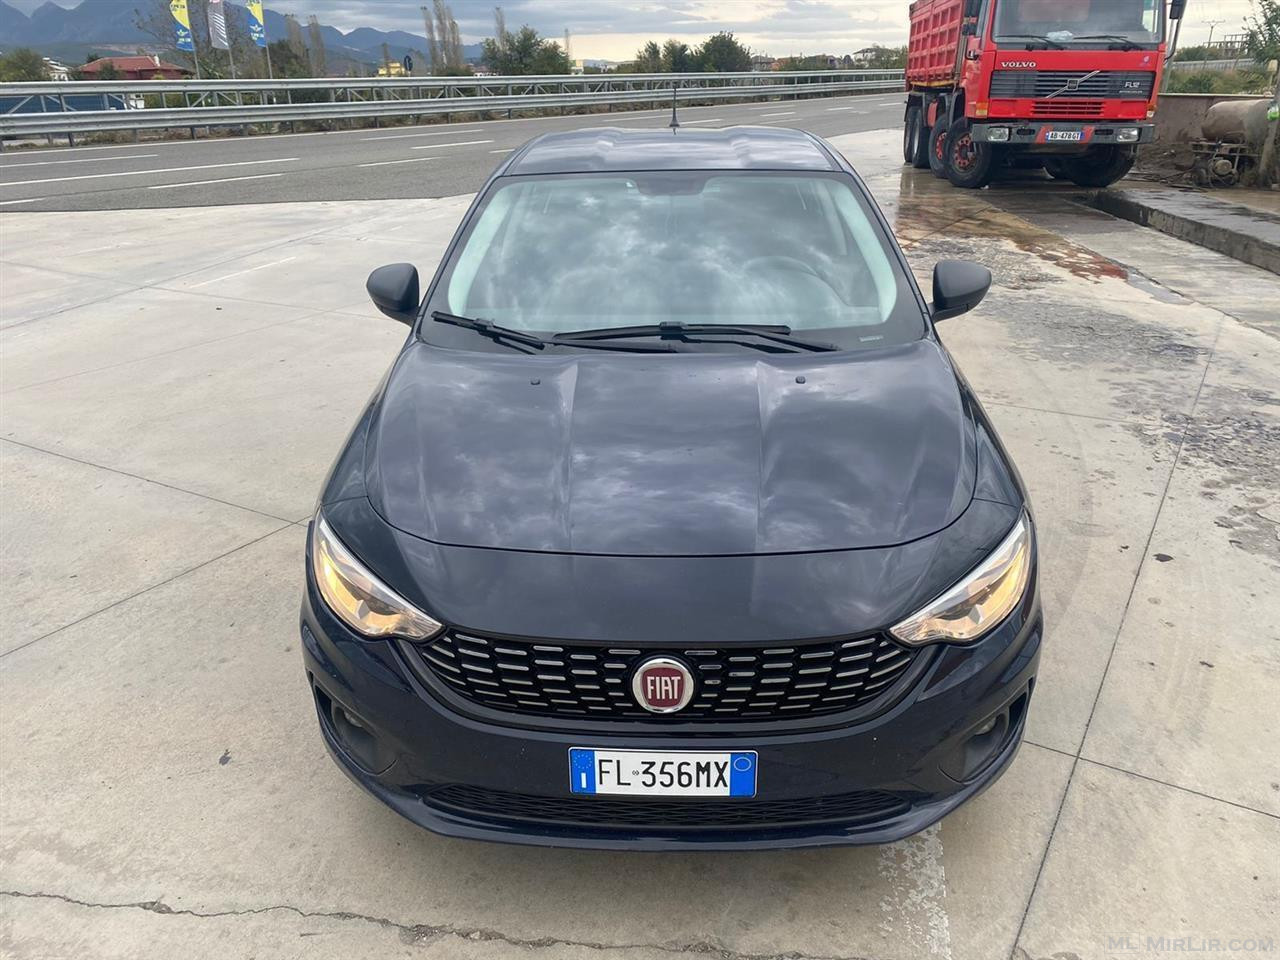 Fiat 2017 4500€